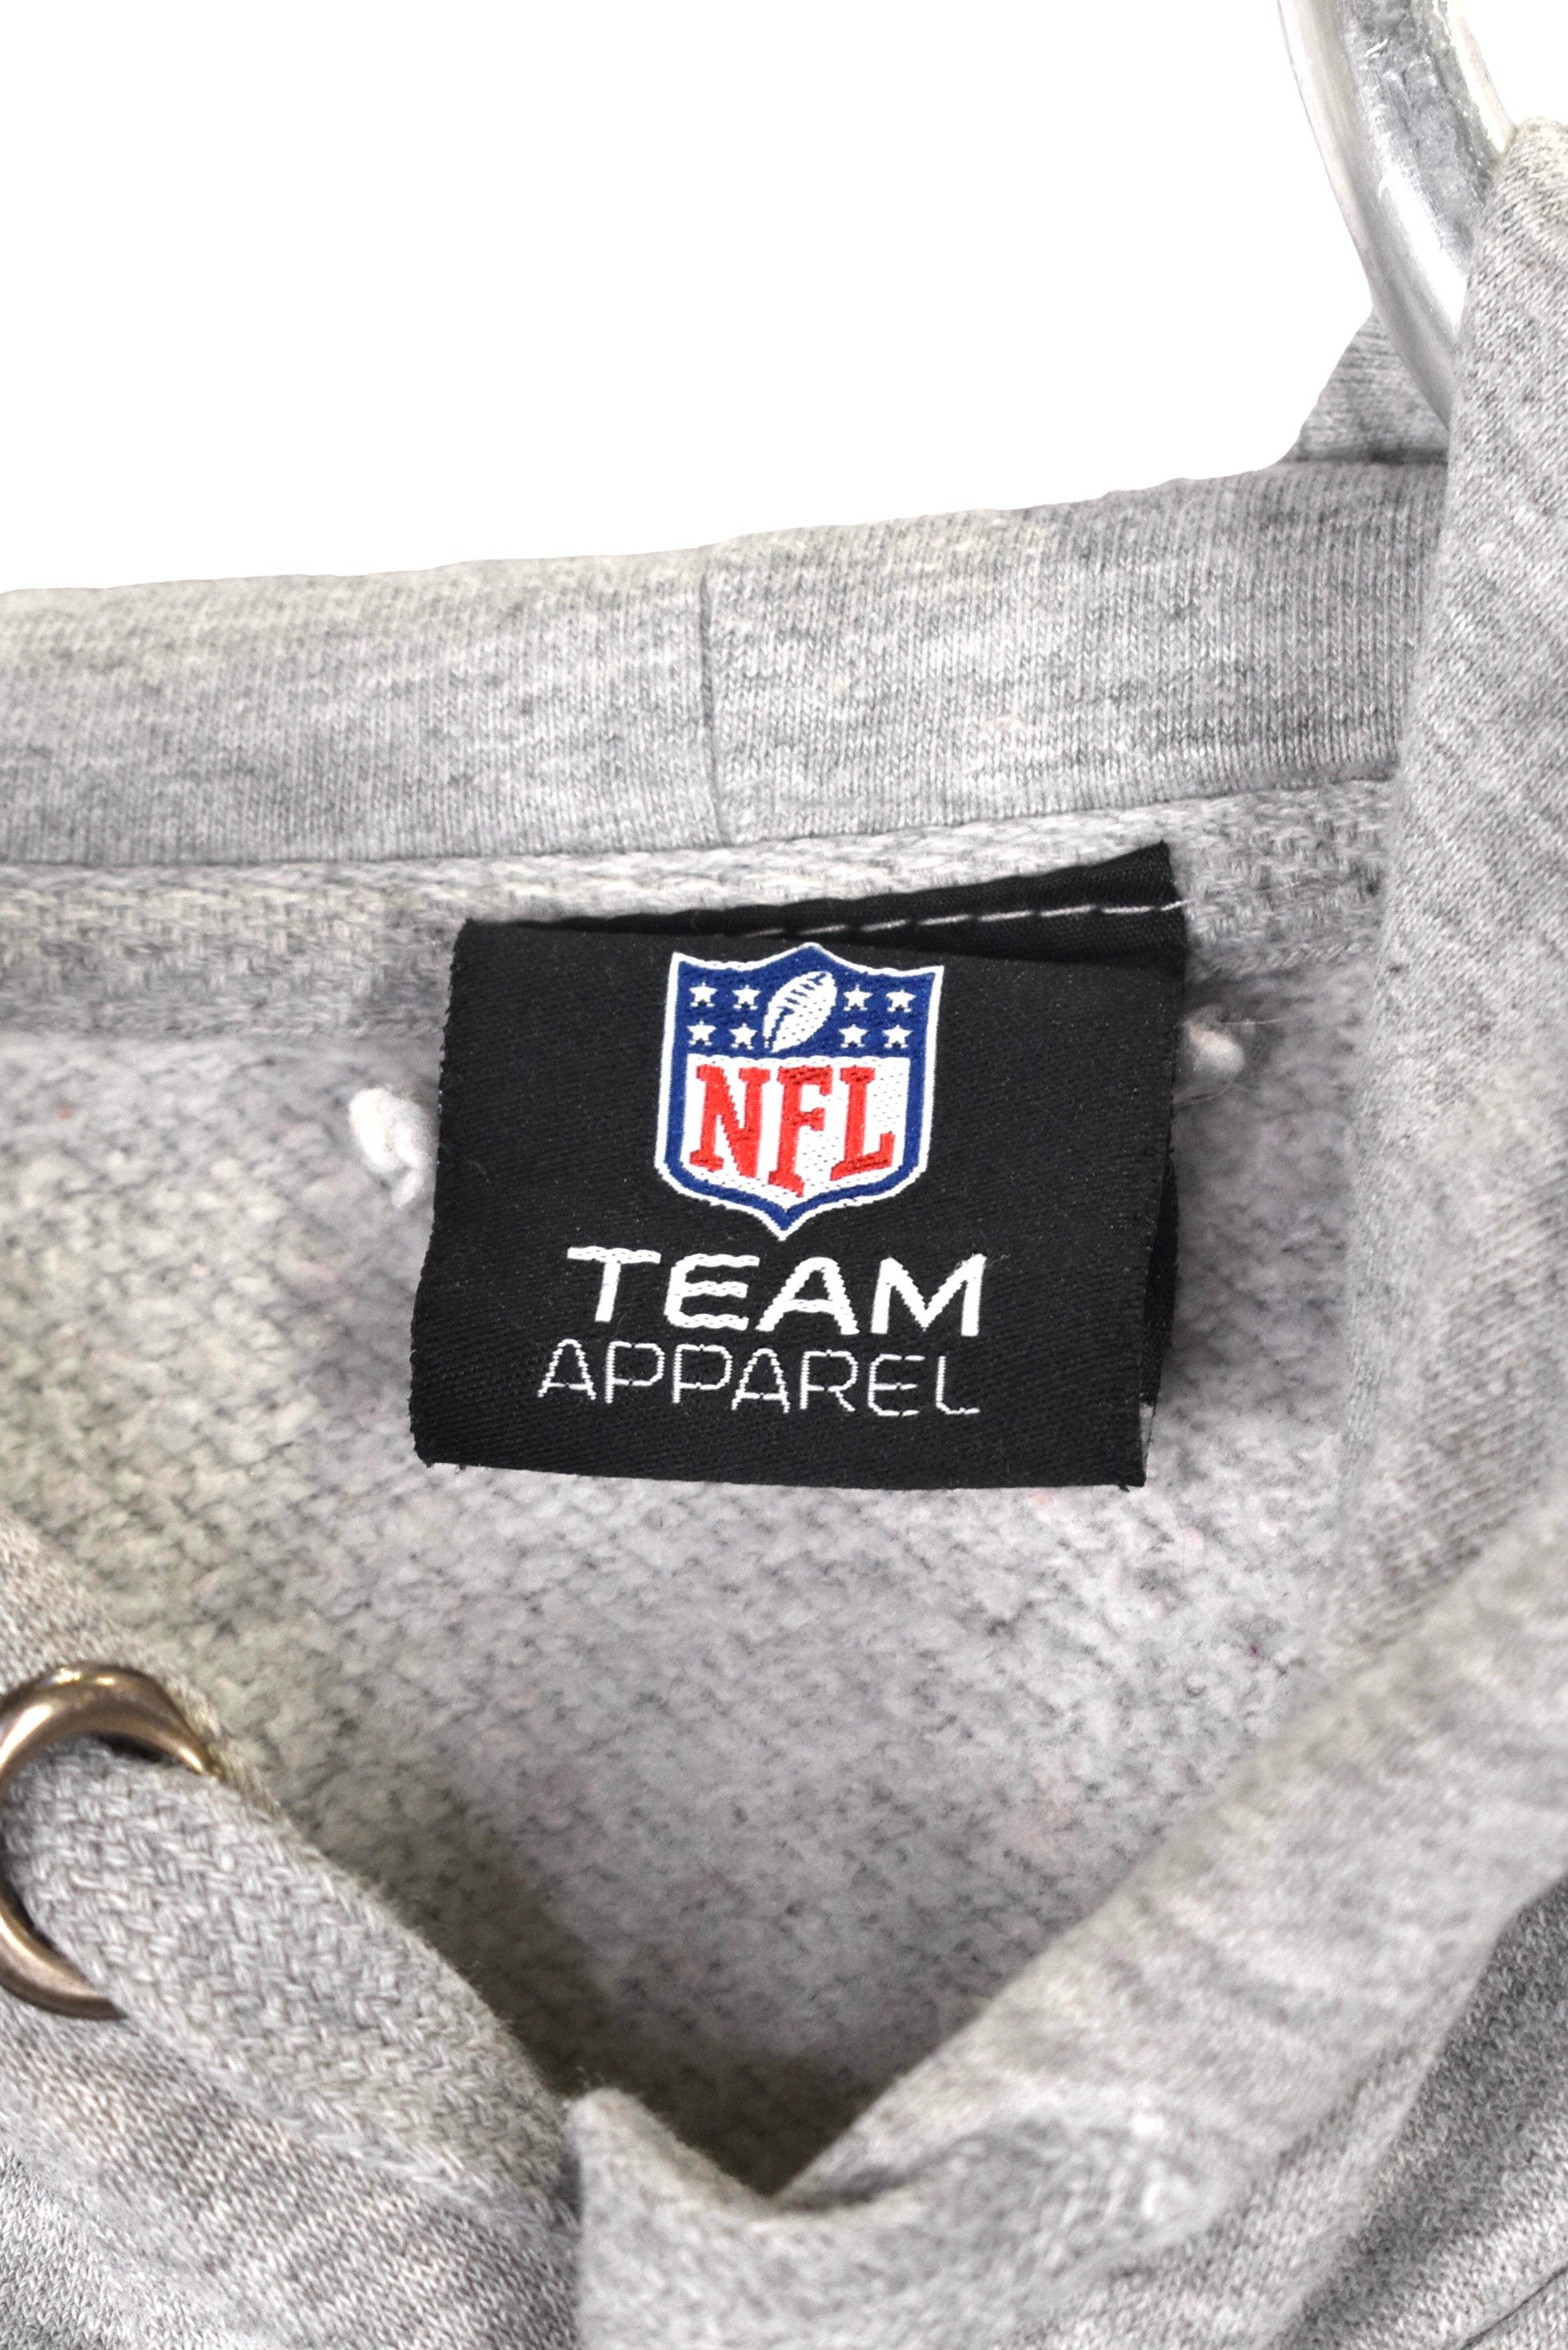 Vintage Green Bay Packers hoodie Large, grey NFL graphic sweatshirt